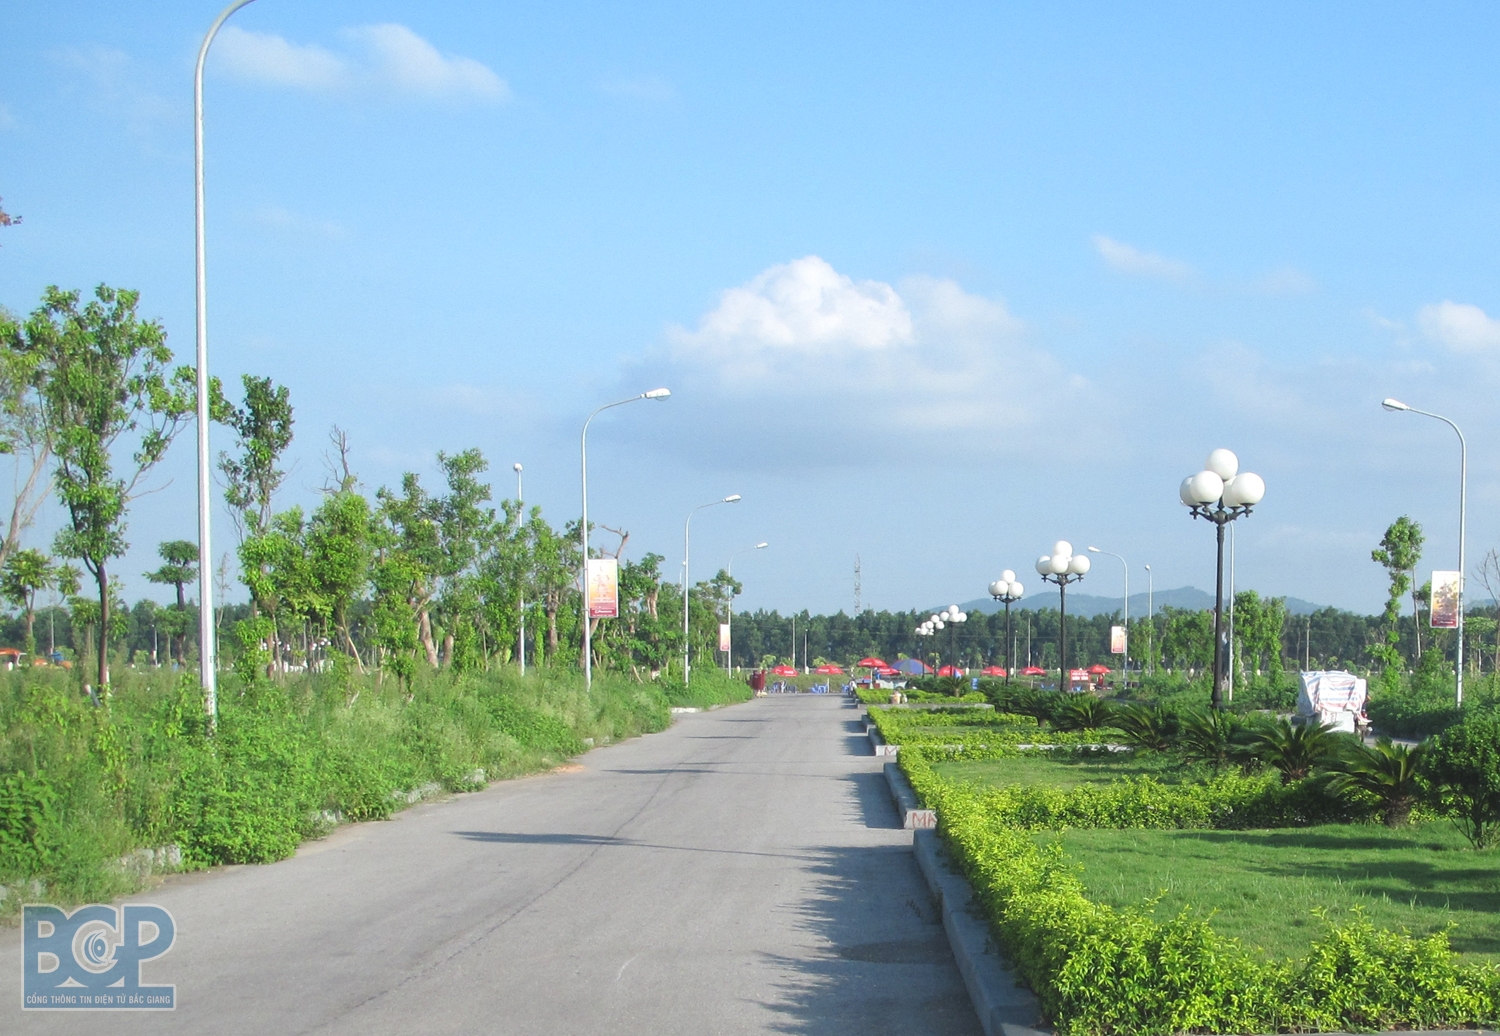 Bắc Giang: Phê duyệt nhiệm vụ Quy hoạch chi tiết xây dựng Khu đô thị mới Tân Tiến - Hương Gián